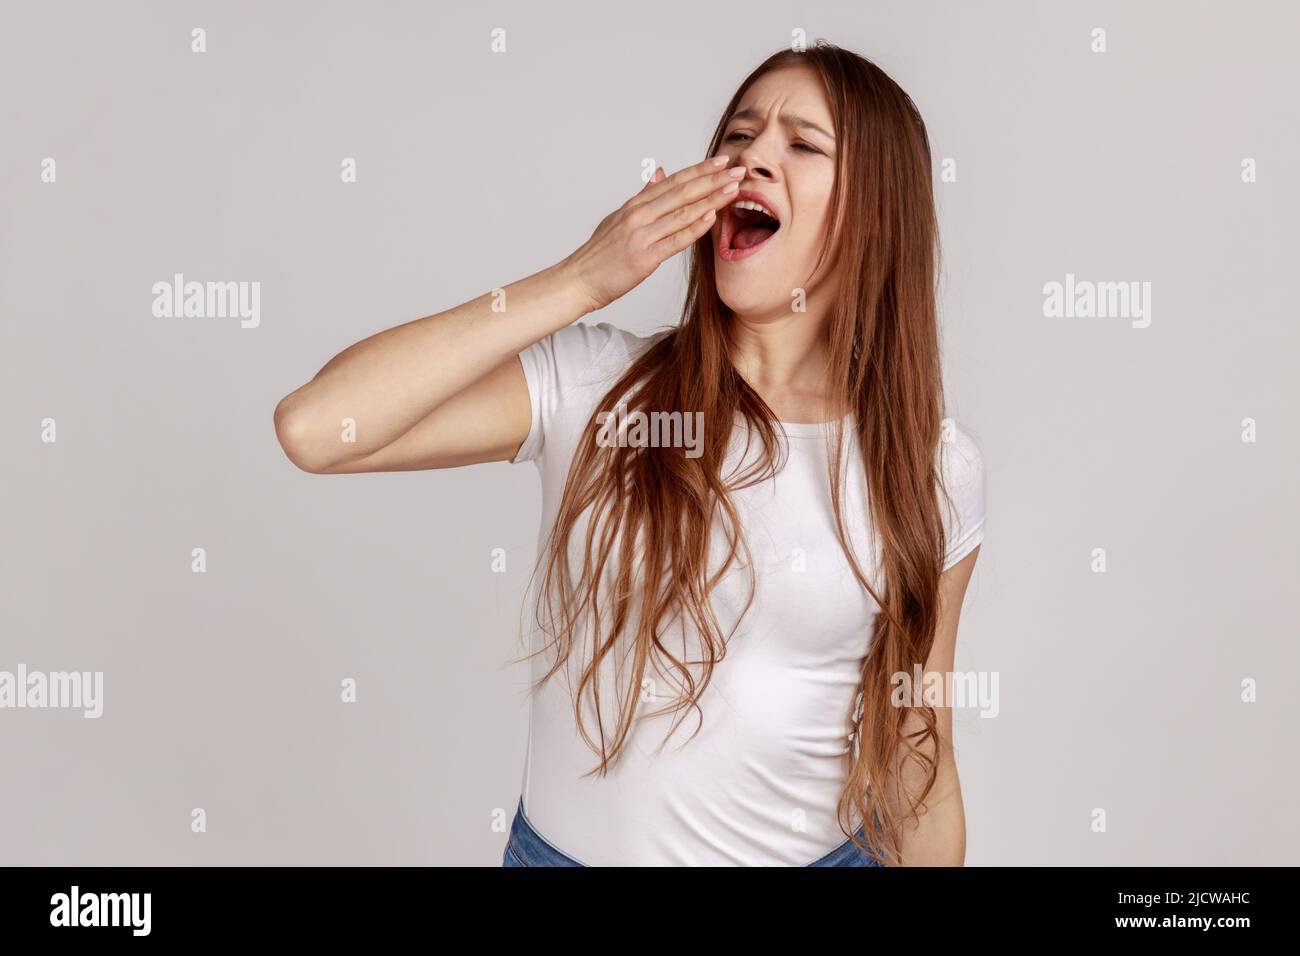 Porträt einer attraktiven müde, schlafenden Frau, die gähnt, den Mund mit der Hand schließt, erschöpft von Schlaflosigkeit, Mangel an Energie, mit weißem T-Shirt. Innenaufnahme des Studios isoliert auf grauem Hintergrund. Stockfoto